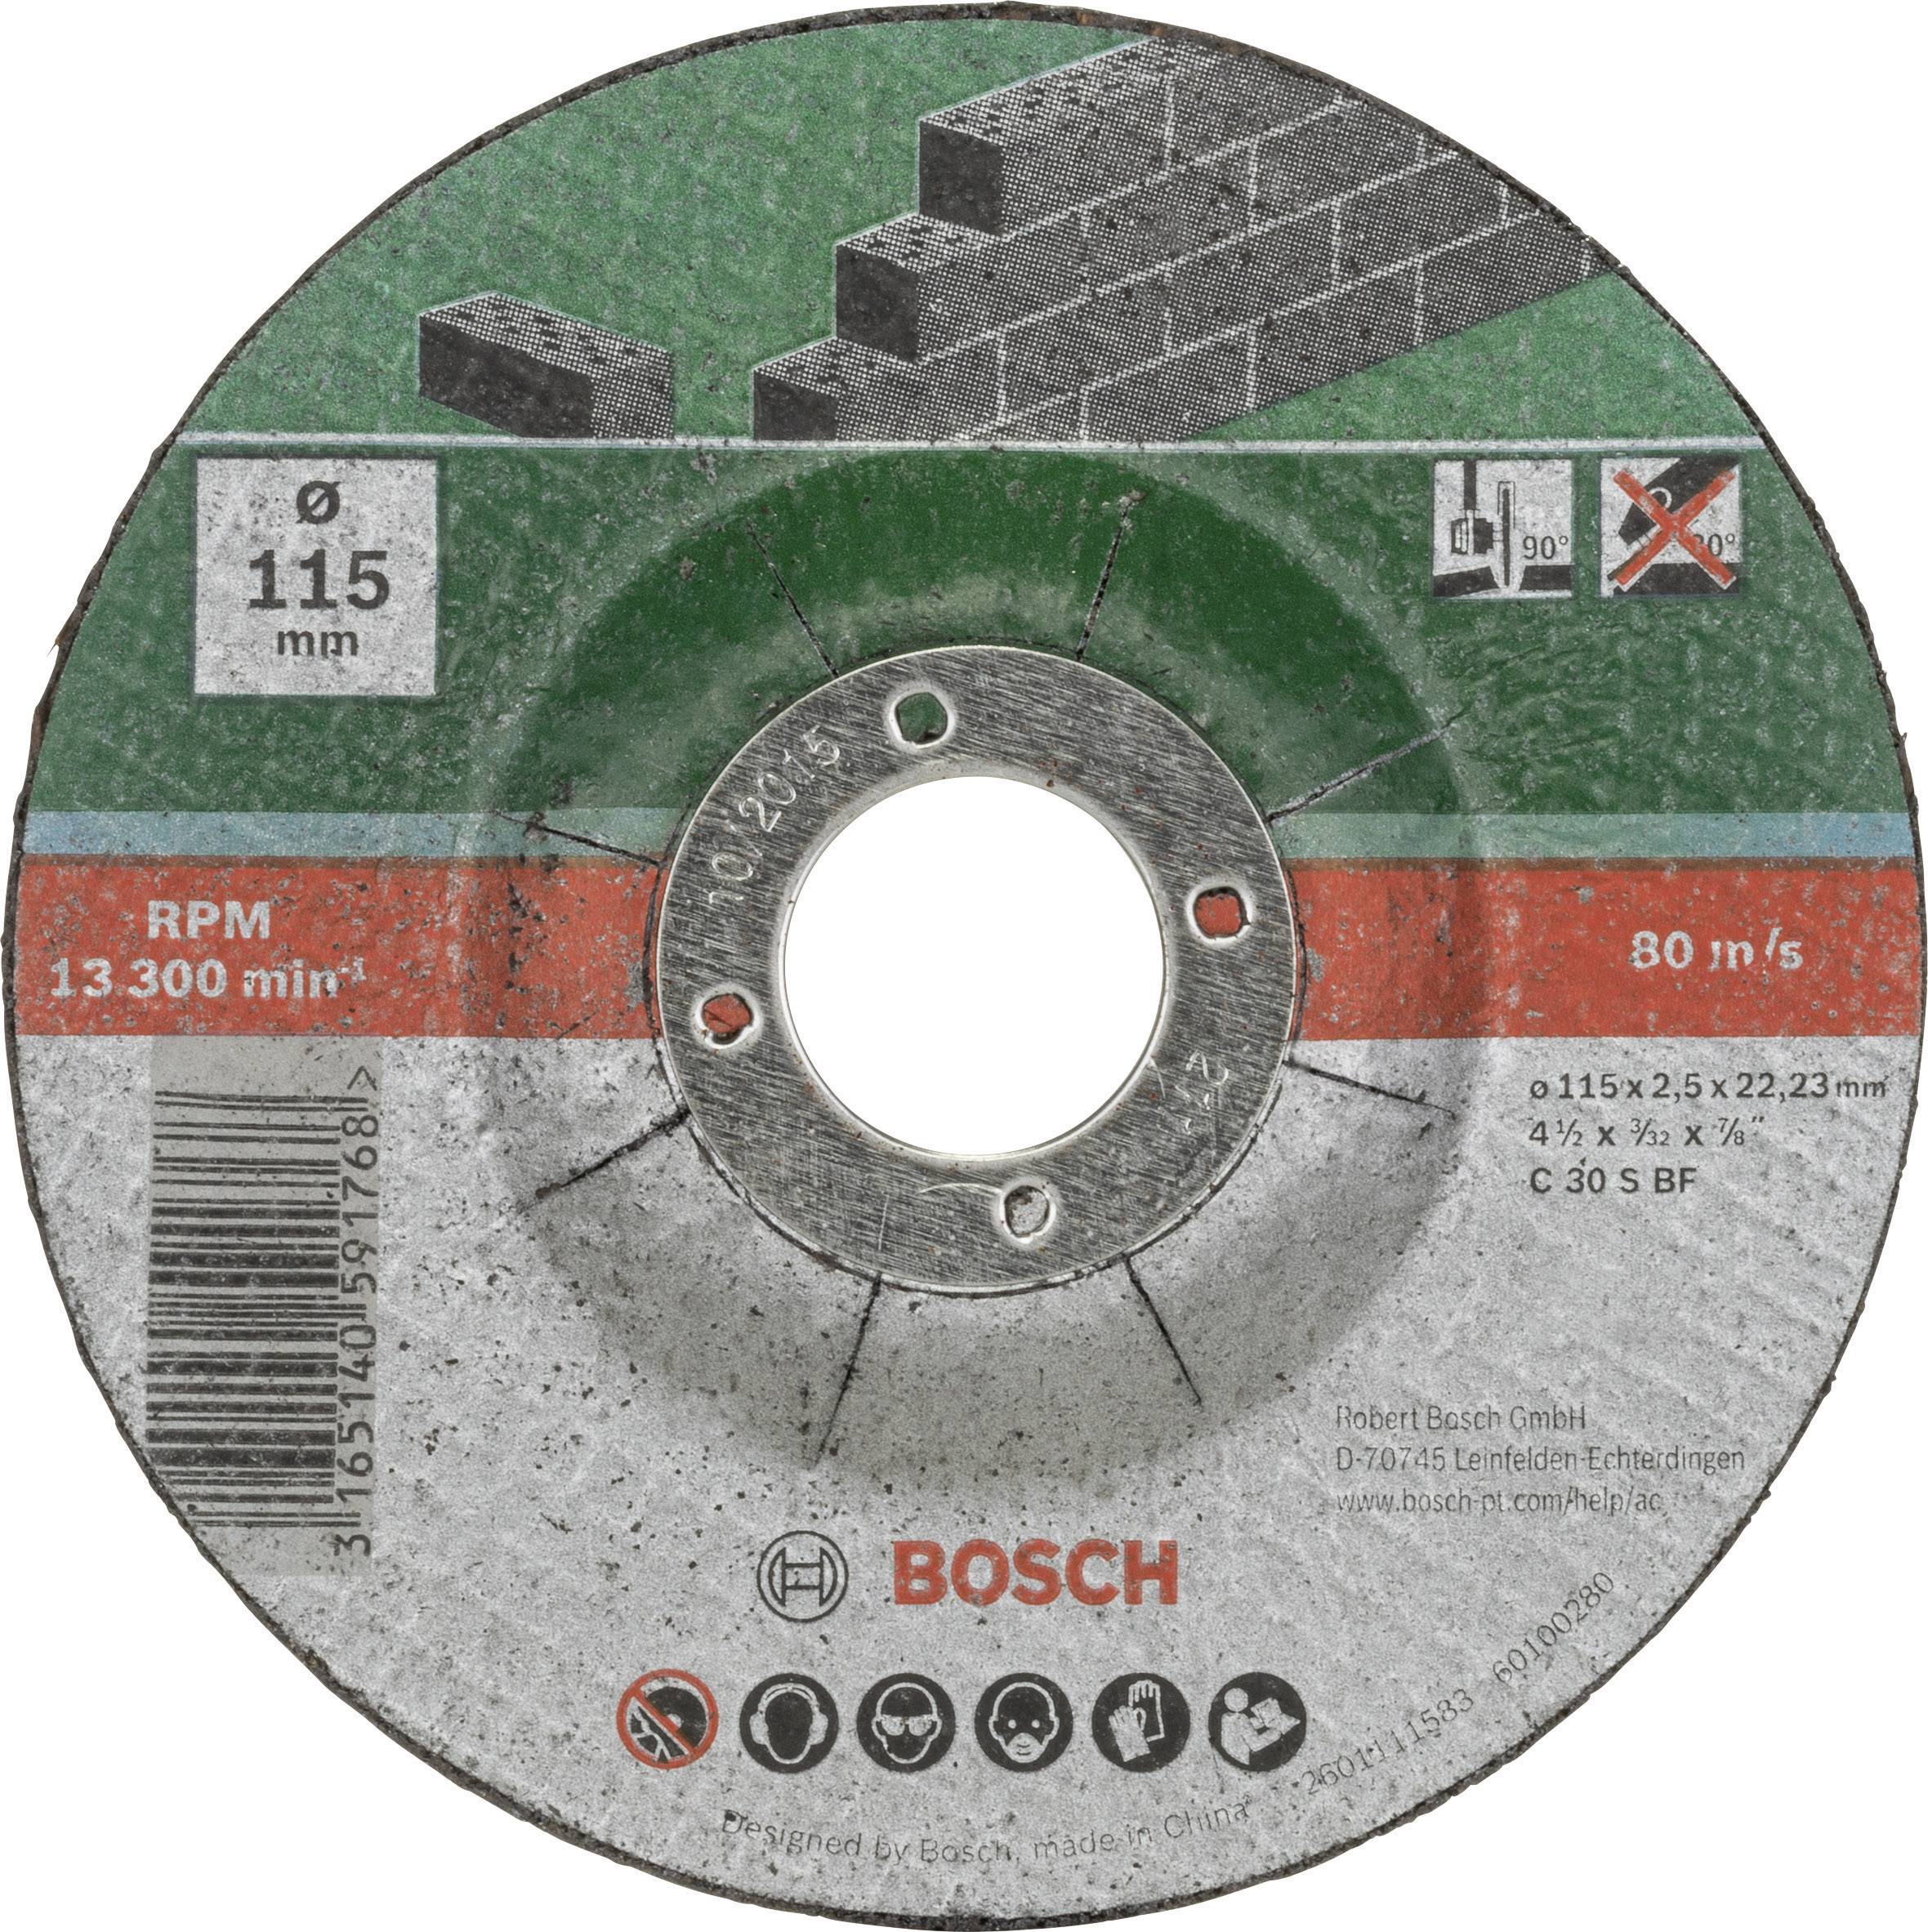 BOSCH _EW Bosch 5tlg. Trennscheiben-Set Durchmesser 115mm gekröpft für Stein 2609256334 (2609256334)